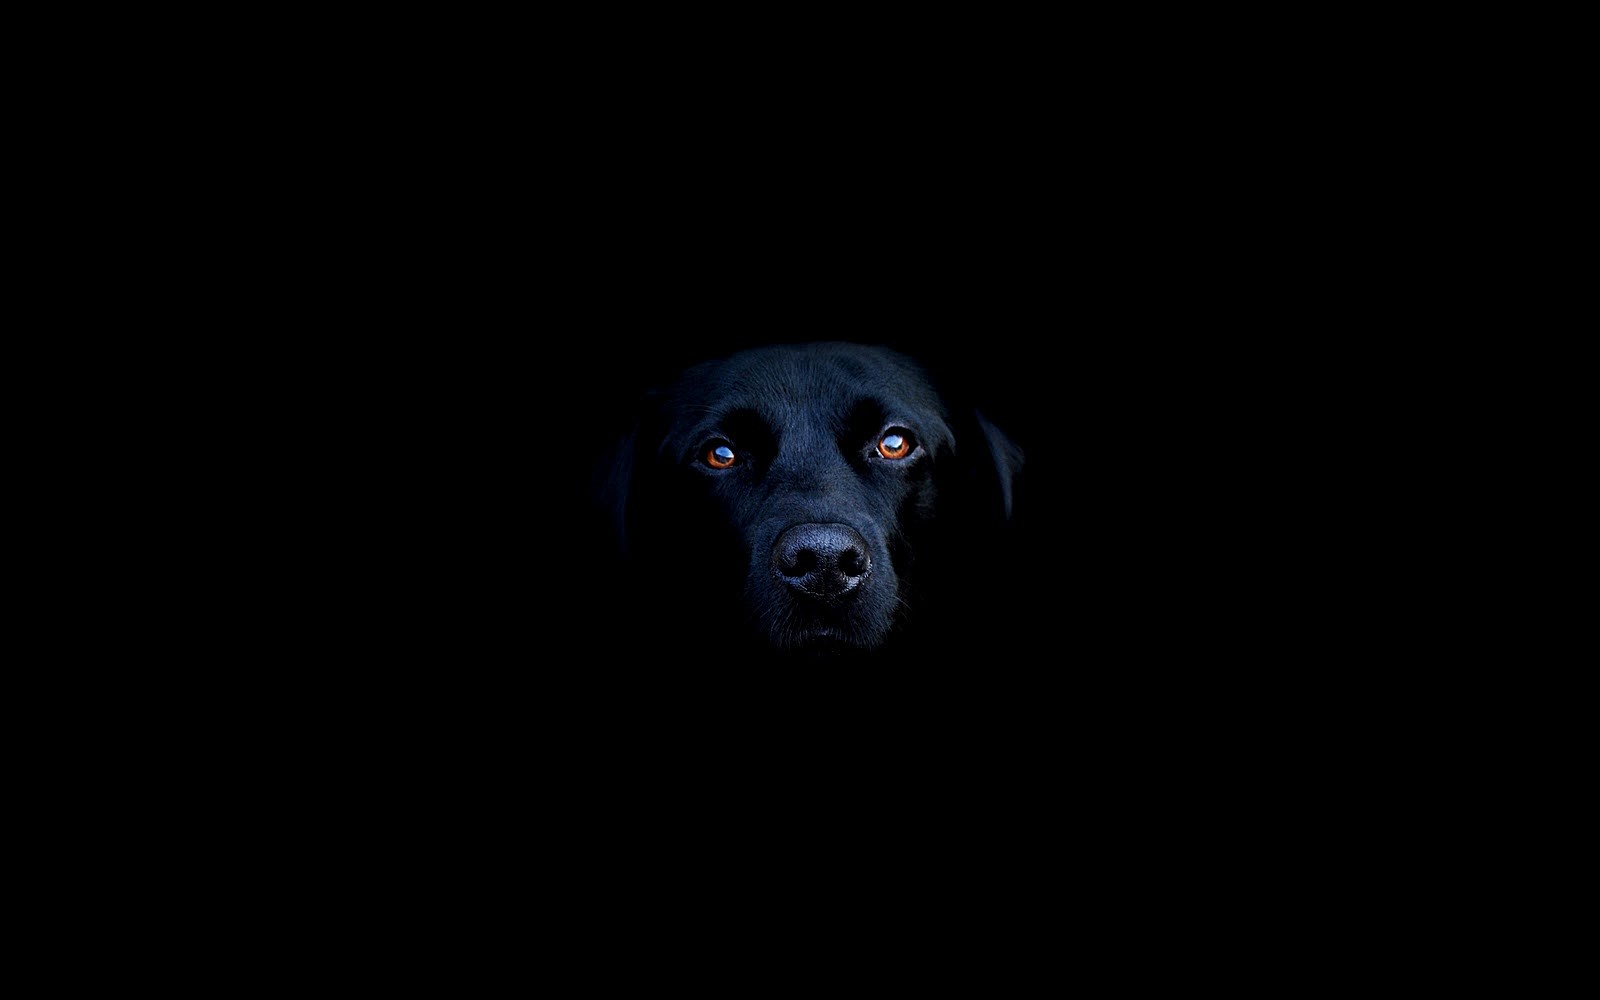 Labrador retriever on a black background